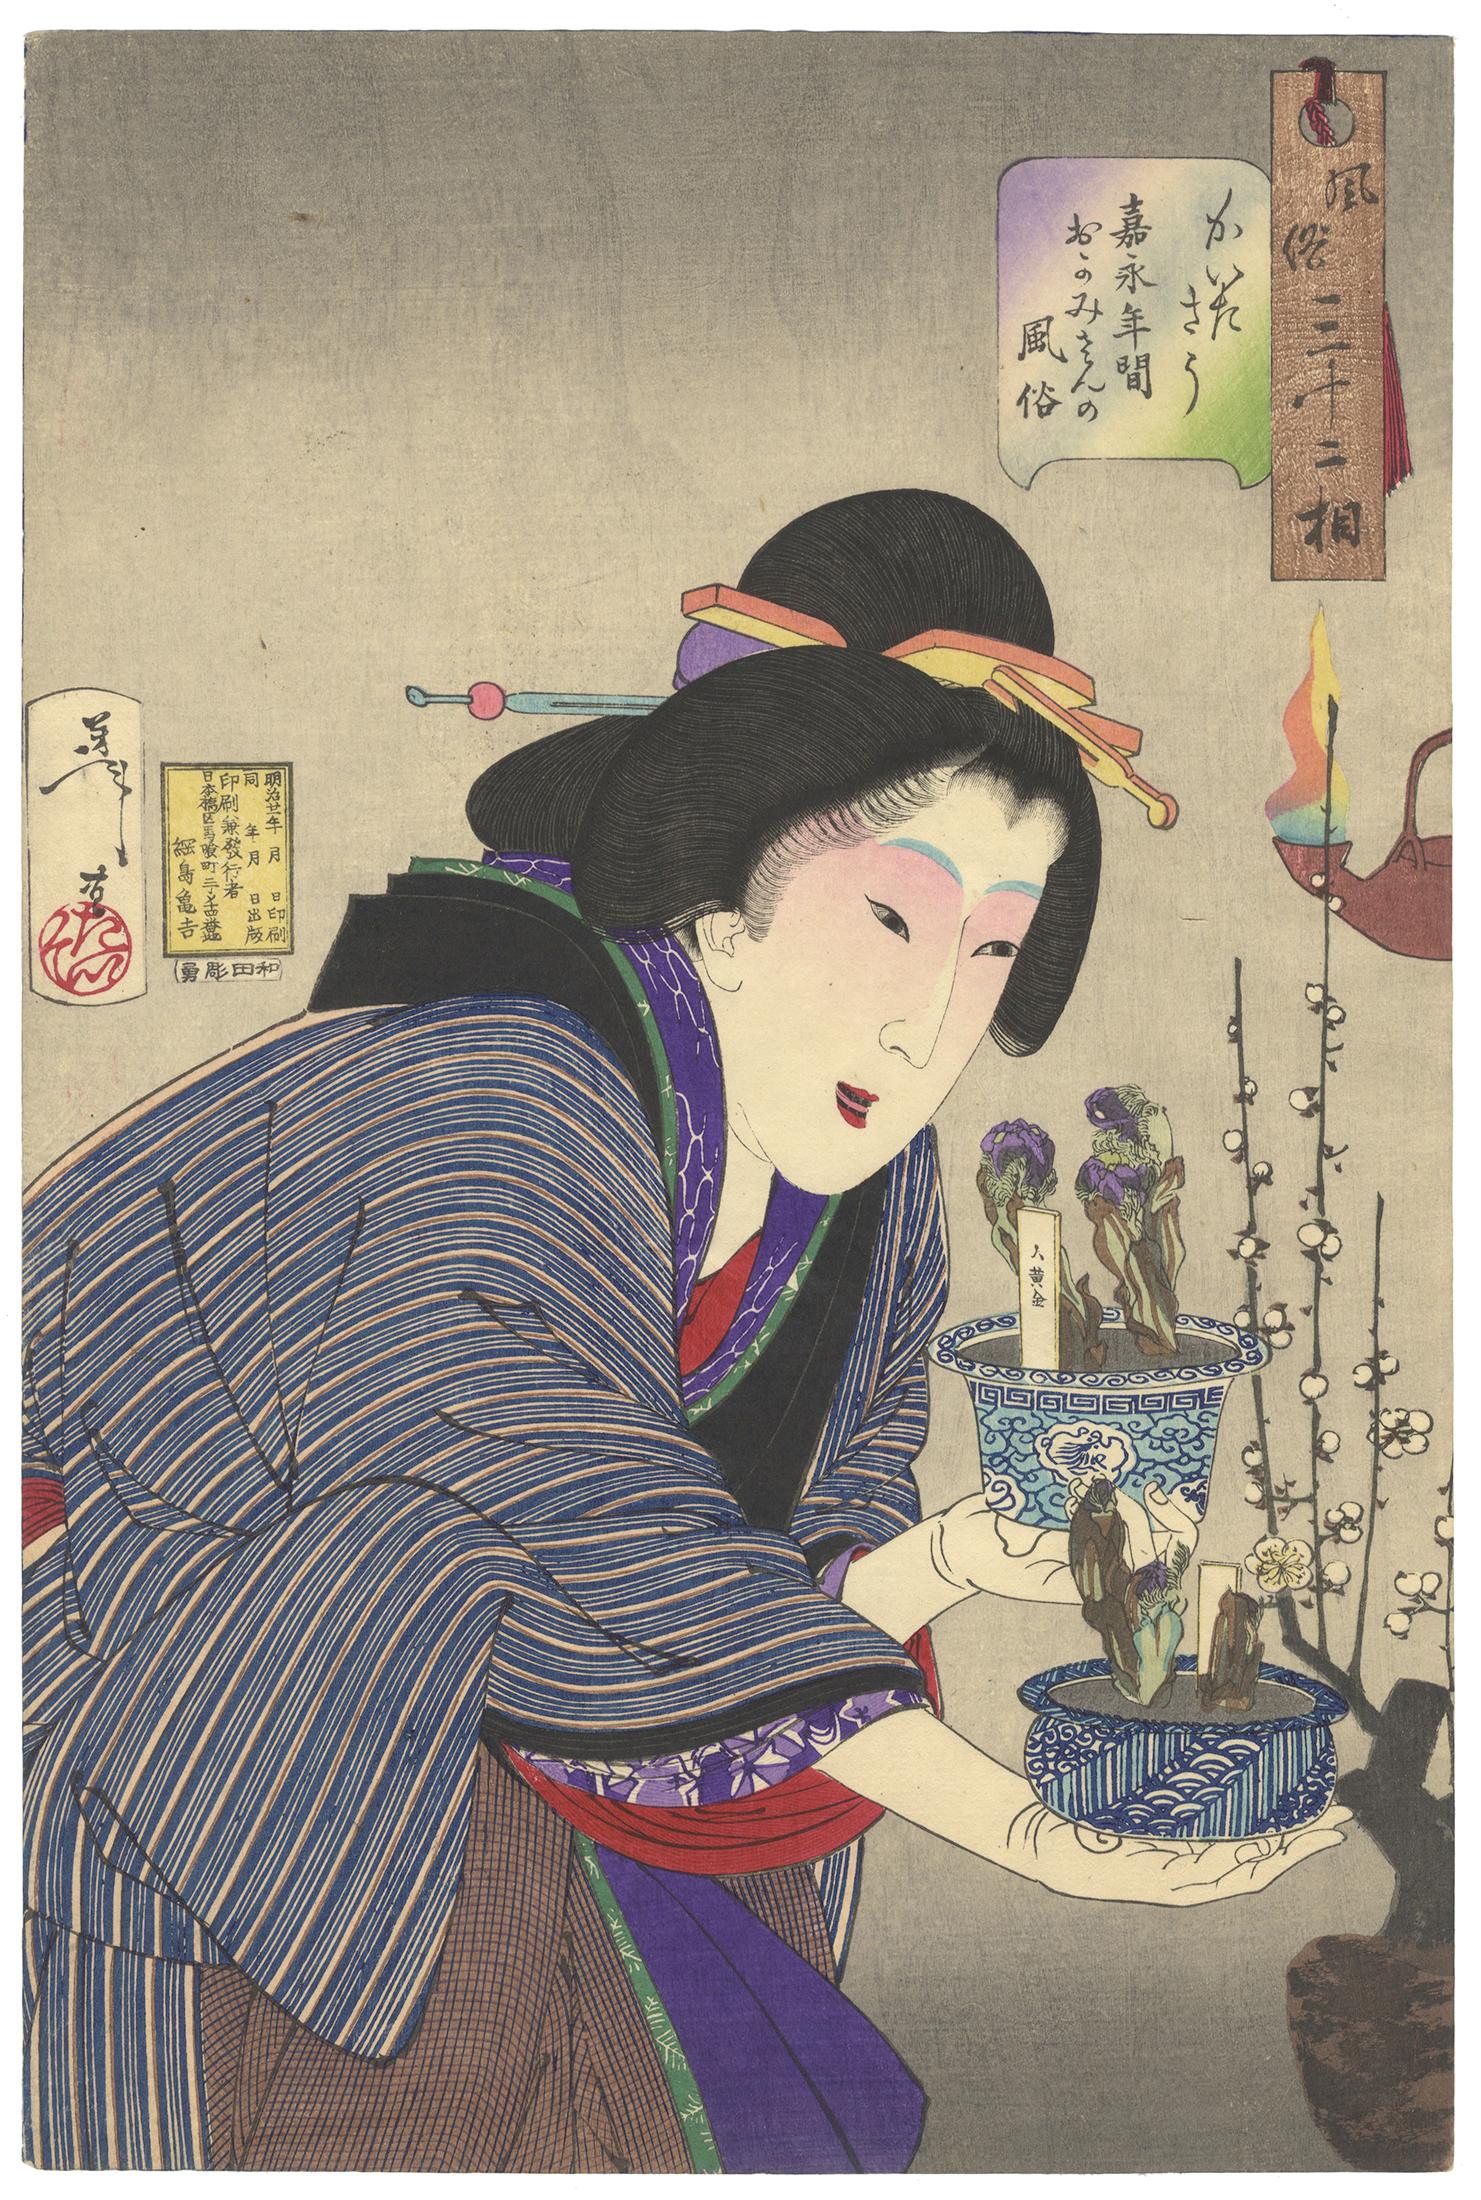 Tsukioka Yoshitoshi Portrait Print - Yoshitoshi, Beauty, Original Japanese Woodblock Print, Plum Blossom, Kimono